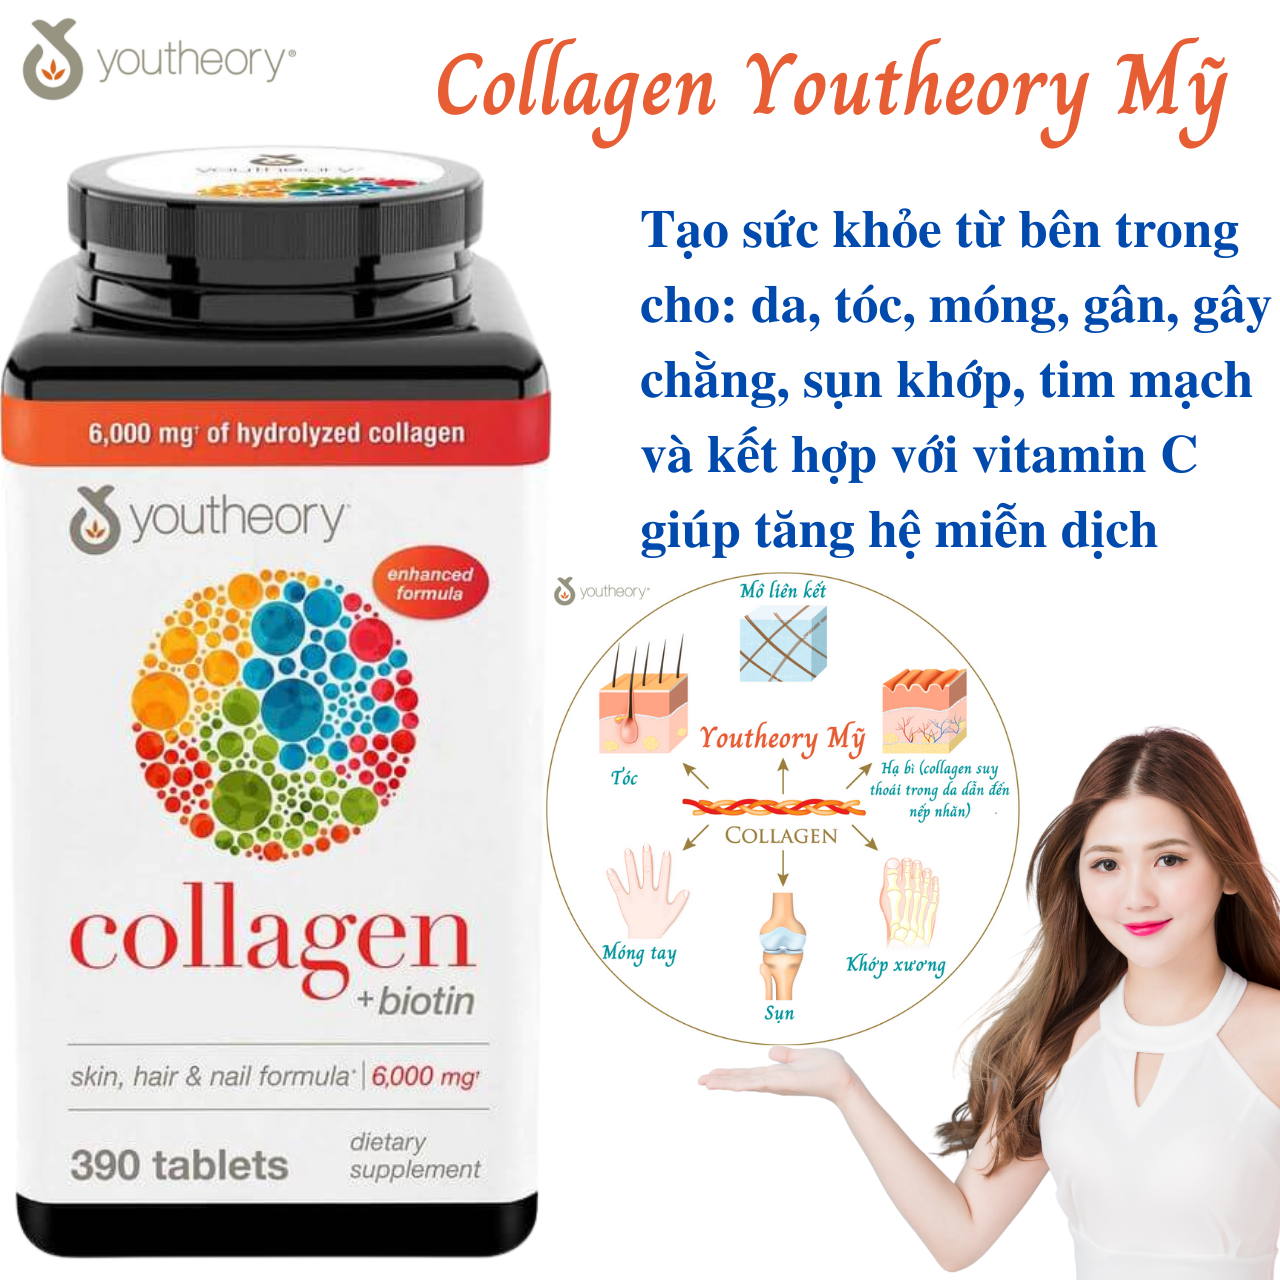 Collagen Vitamin C Youtheory Mỹ Tạo Sức Khỏe Từ Bên Trong Cho Da, Tóc, Móng, Gân, Dây Chằng, Sụn, Khớp Xương, Tim Mạch Và Tăng Hệ Miễn Dịch - Hộp 390 Viên 2